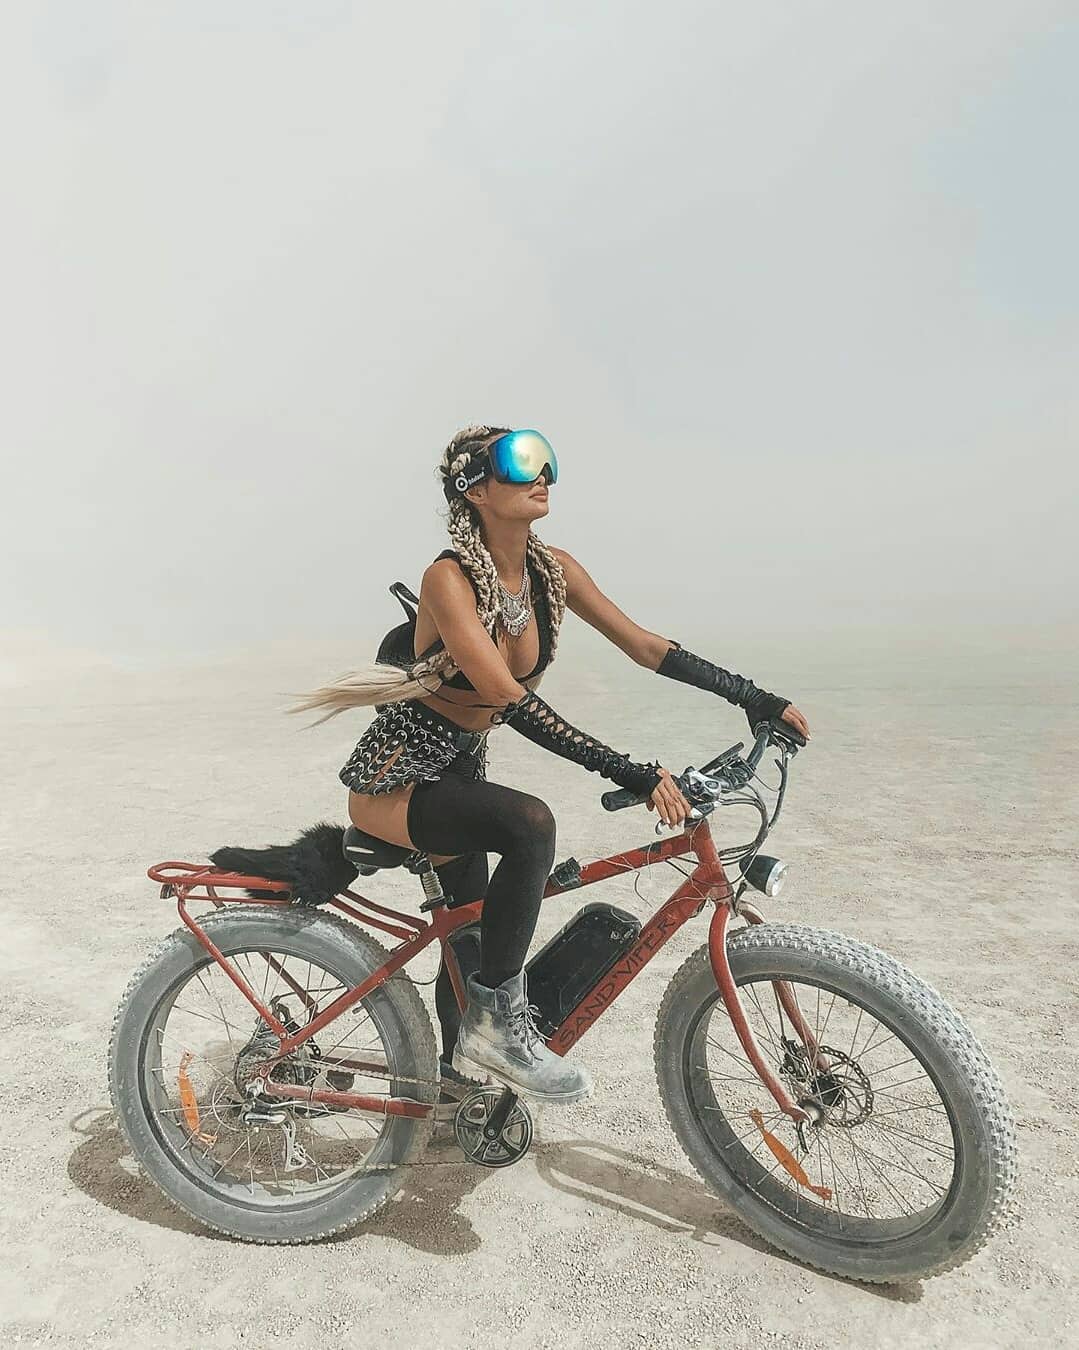 Burning Man 2019 7 festival ocio musica futurismo estilo de vida viajar veano